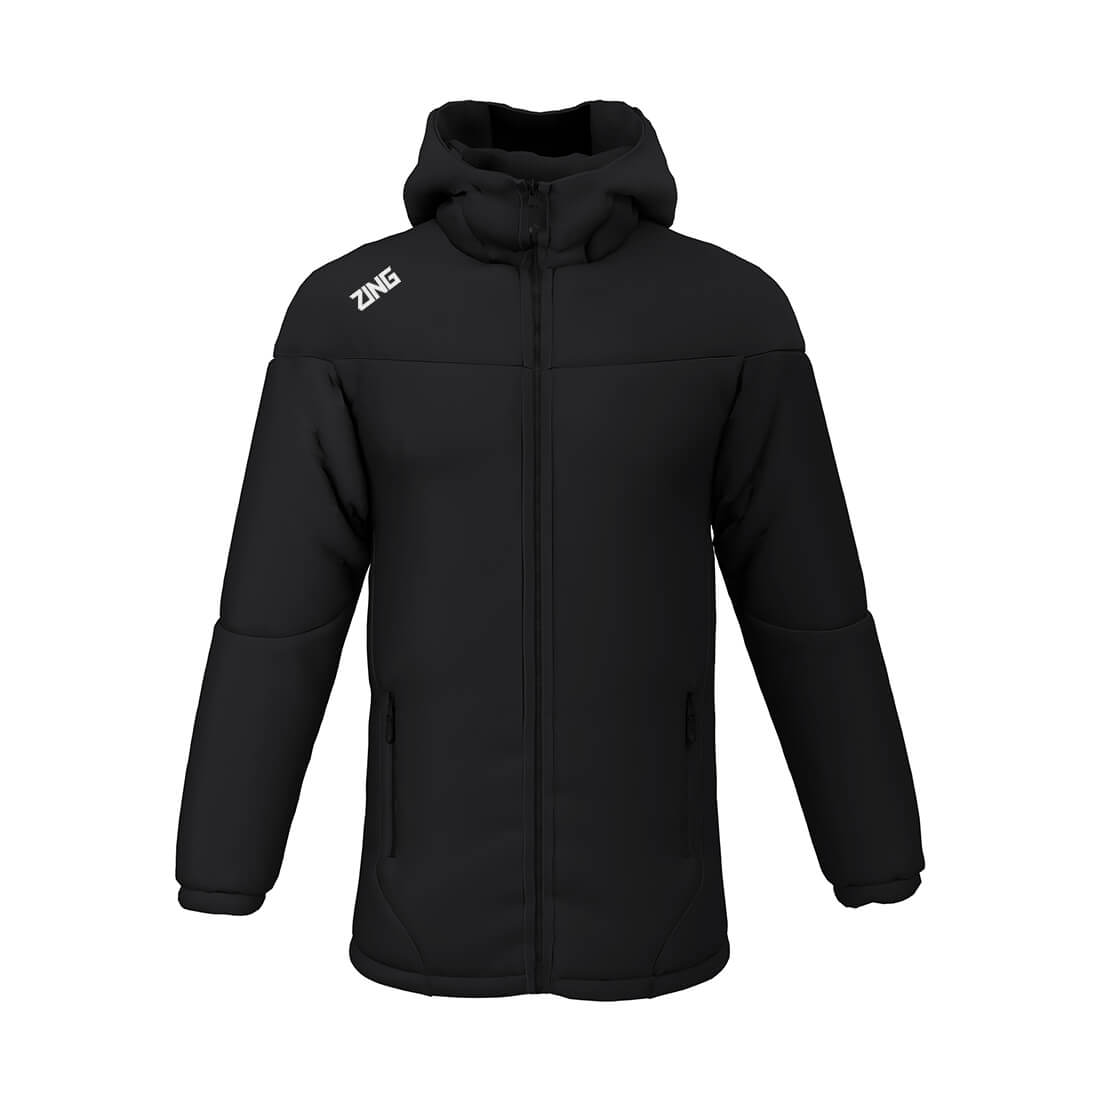 ZING Sportswear Sideline Jacket | Training Kit and Teamwear - Front Black